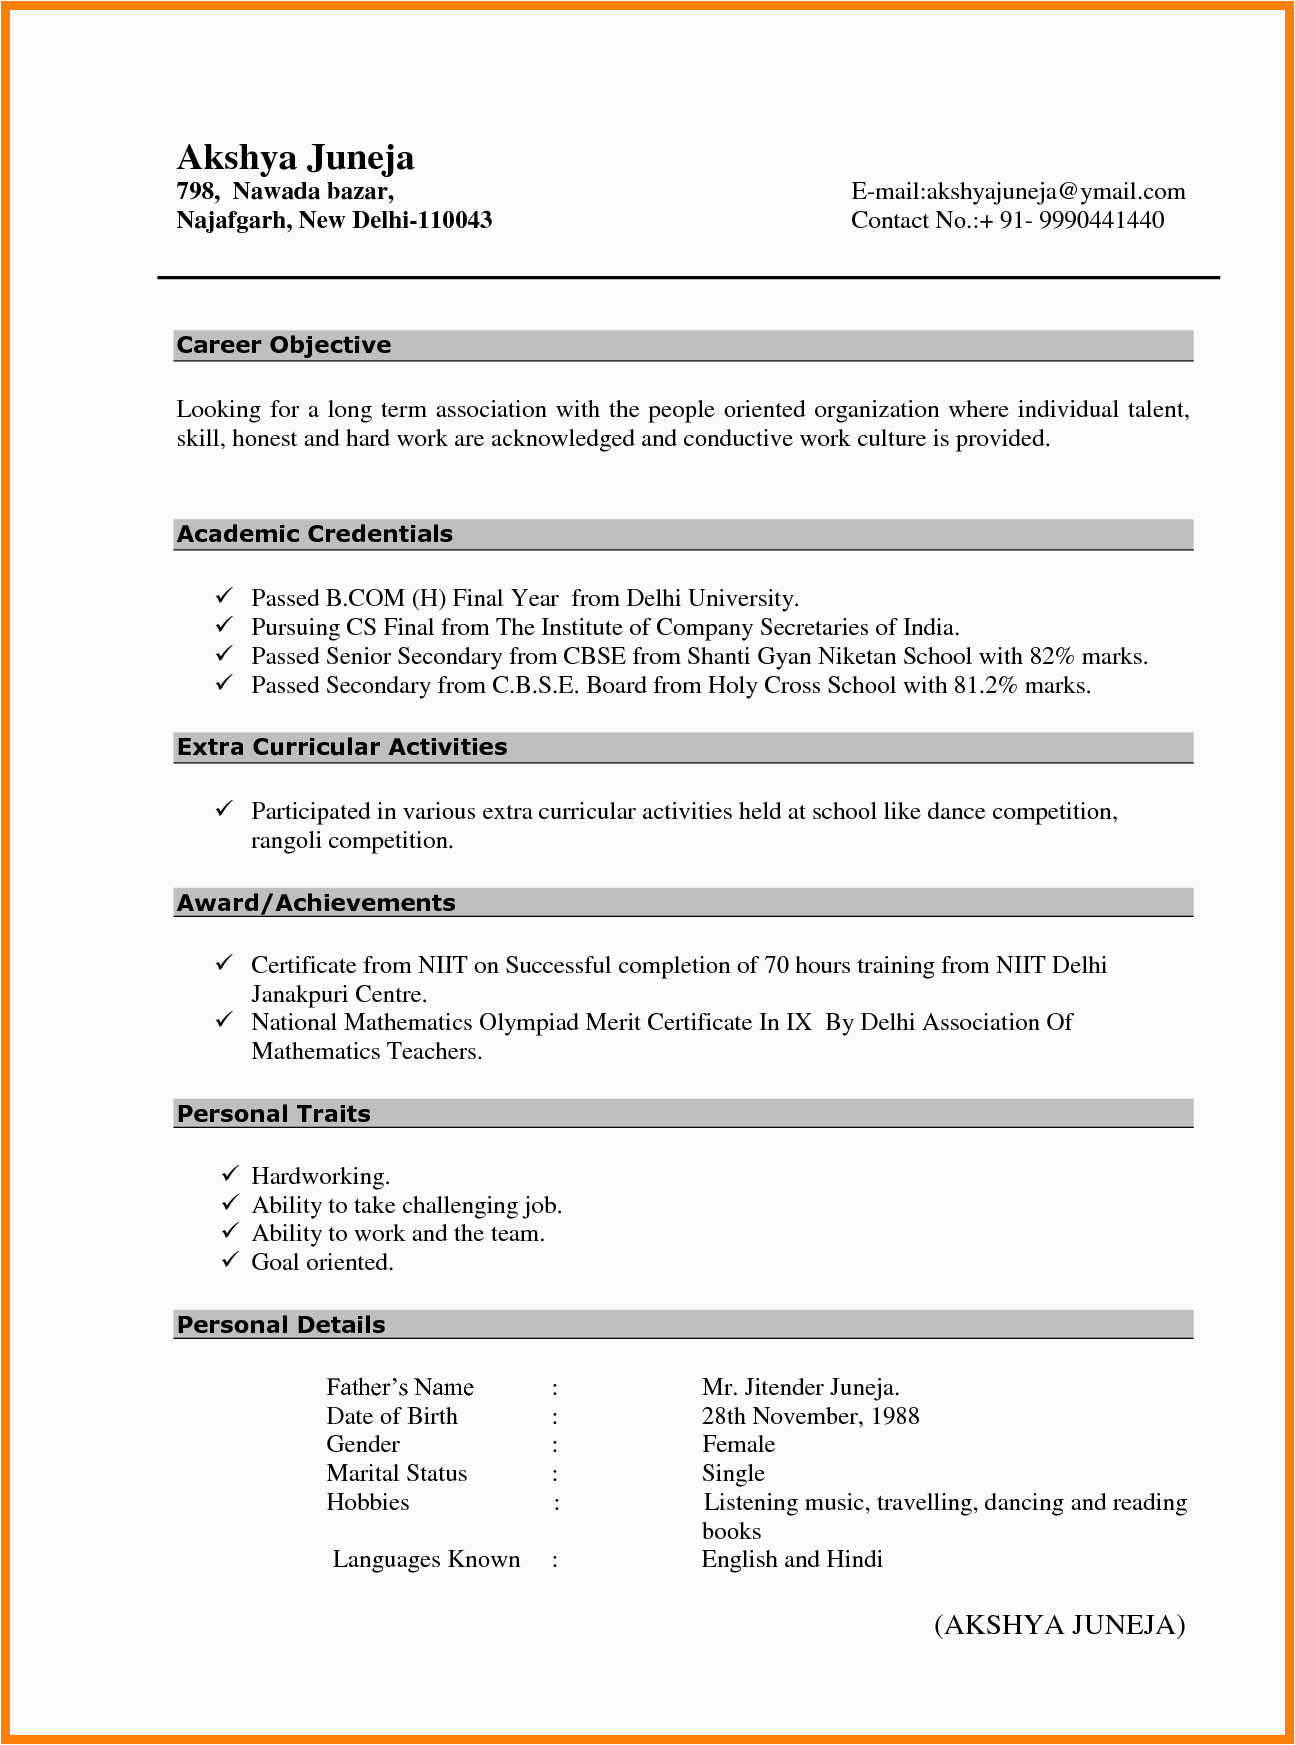 Sample Resume format for Bcom Freshers Freshers B Cv format